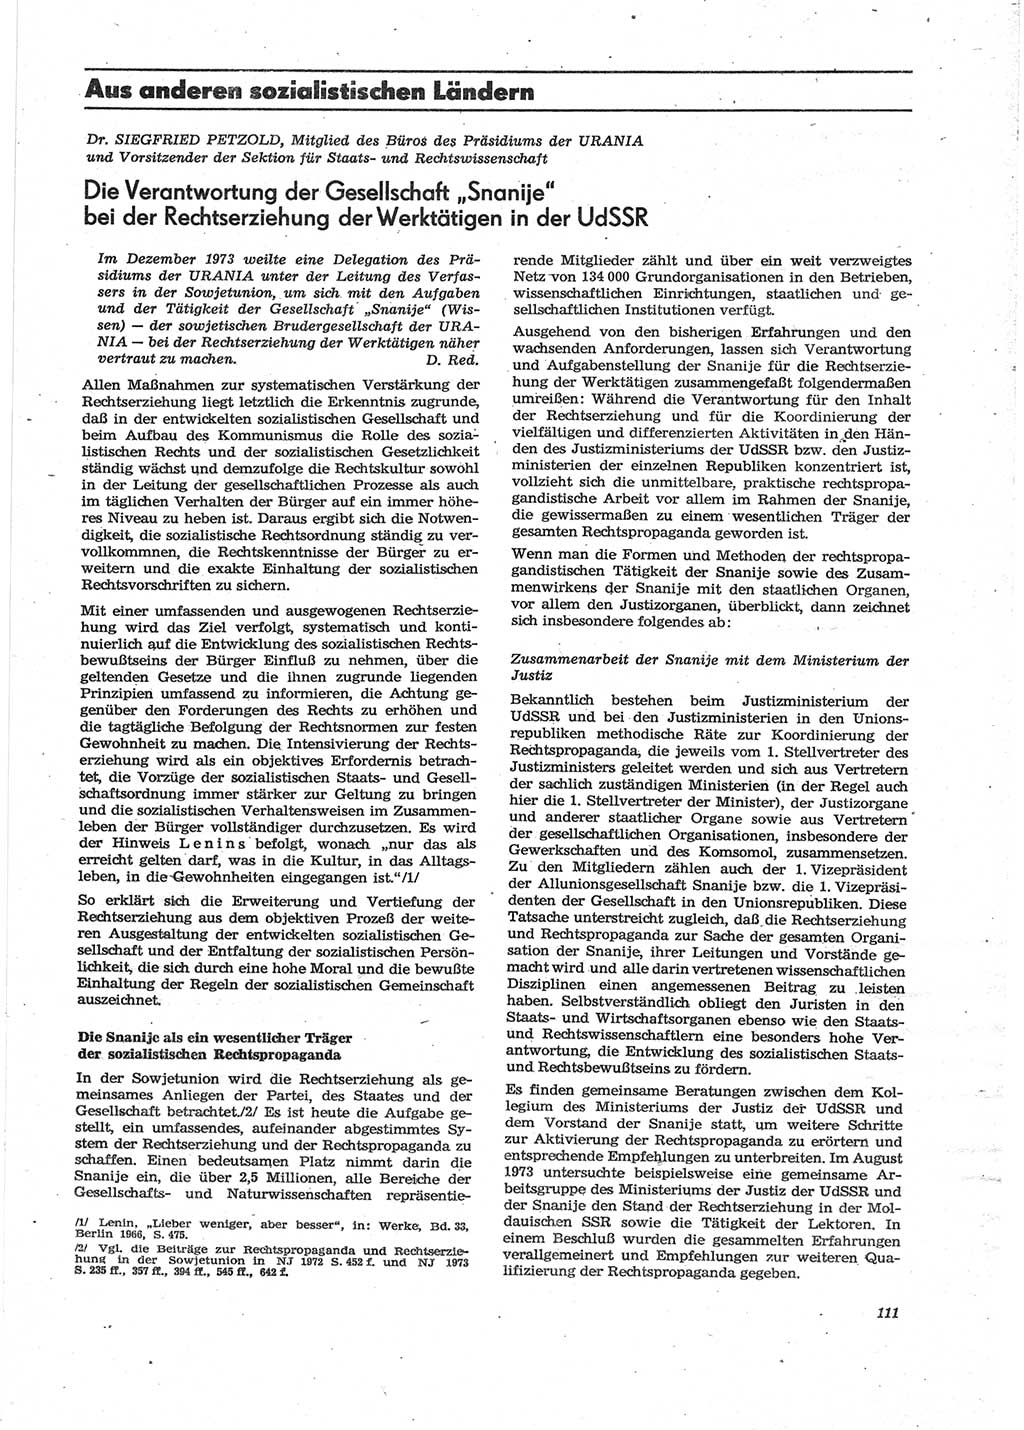 Neue Justiz (NJ), Zeitschrift für Recht und Rechtswissenschaft [Deutsche Demokratische Republik (DDR)], 28. Jahrgang 1974, Seite 111 (NJ DDR 1974, S. 111)